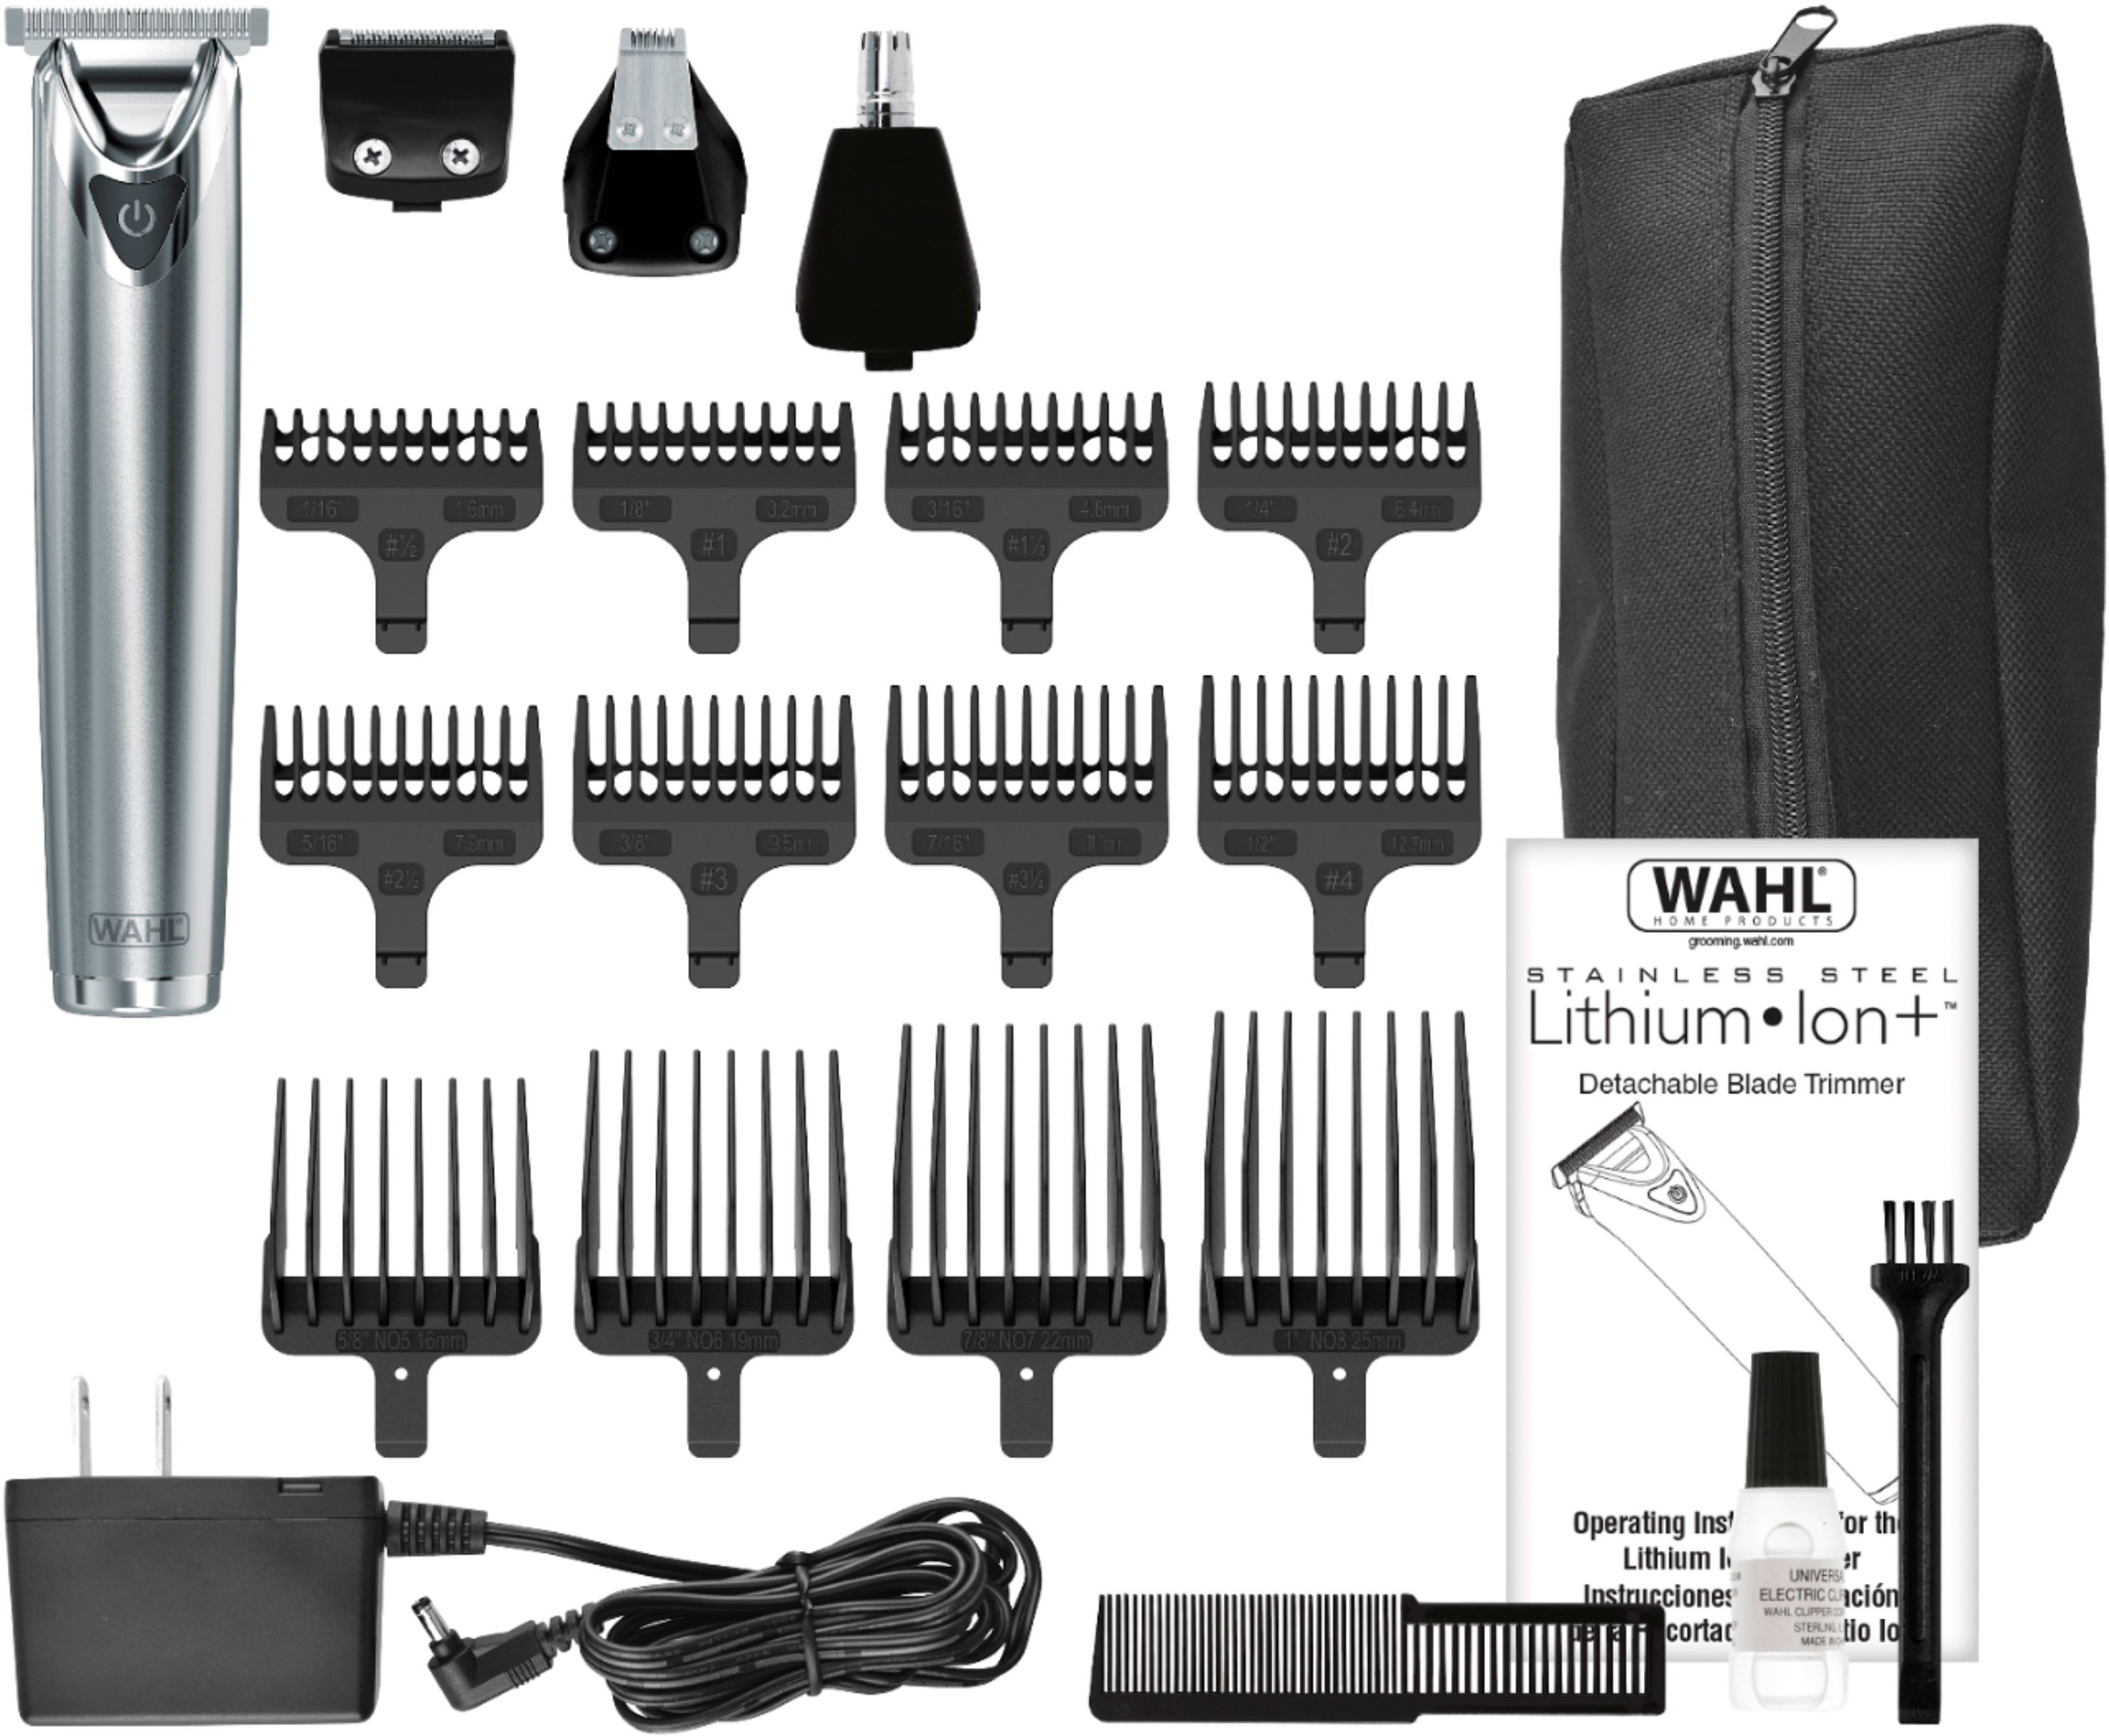 wahl lithium ion plus stainless steel grooming kit